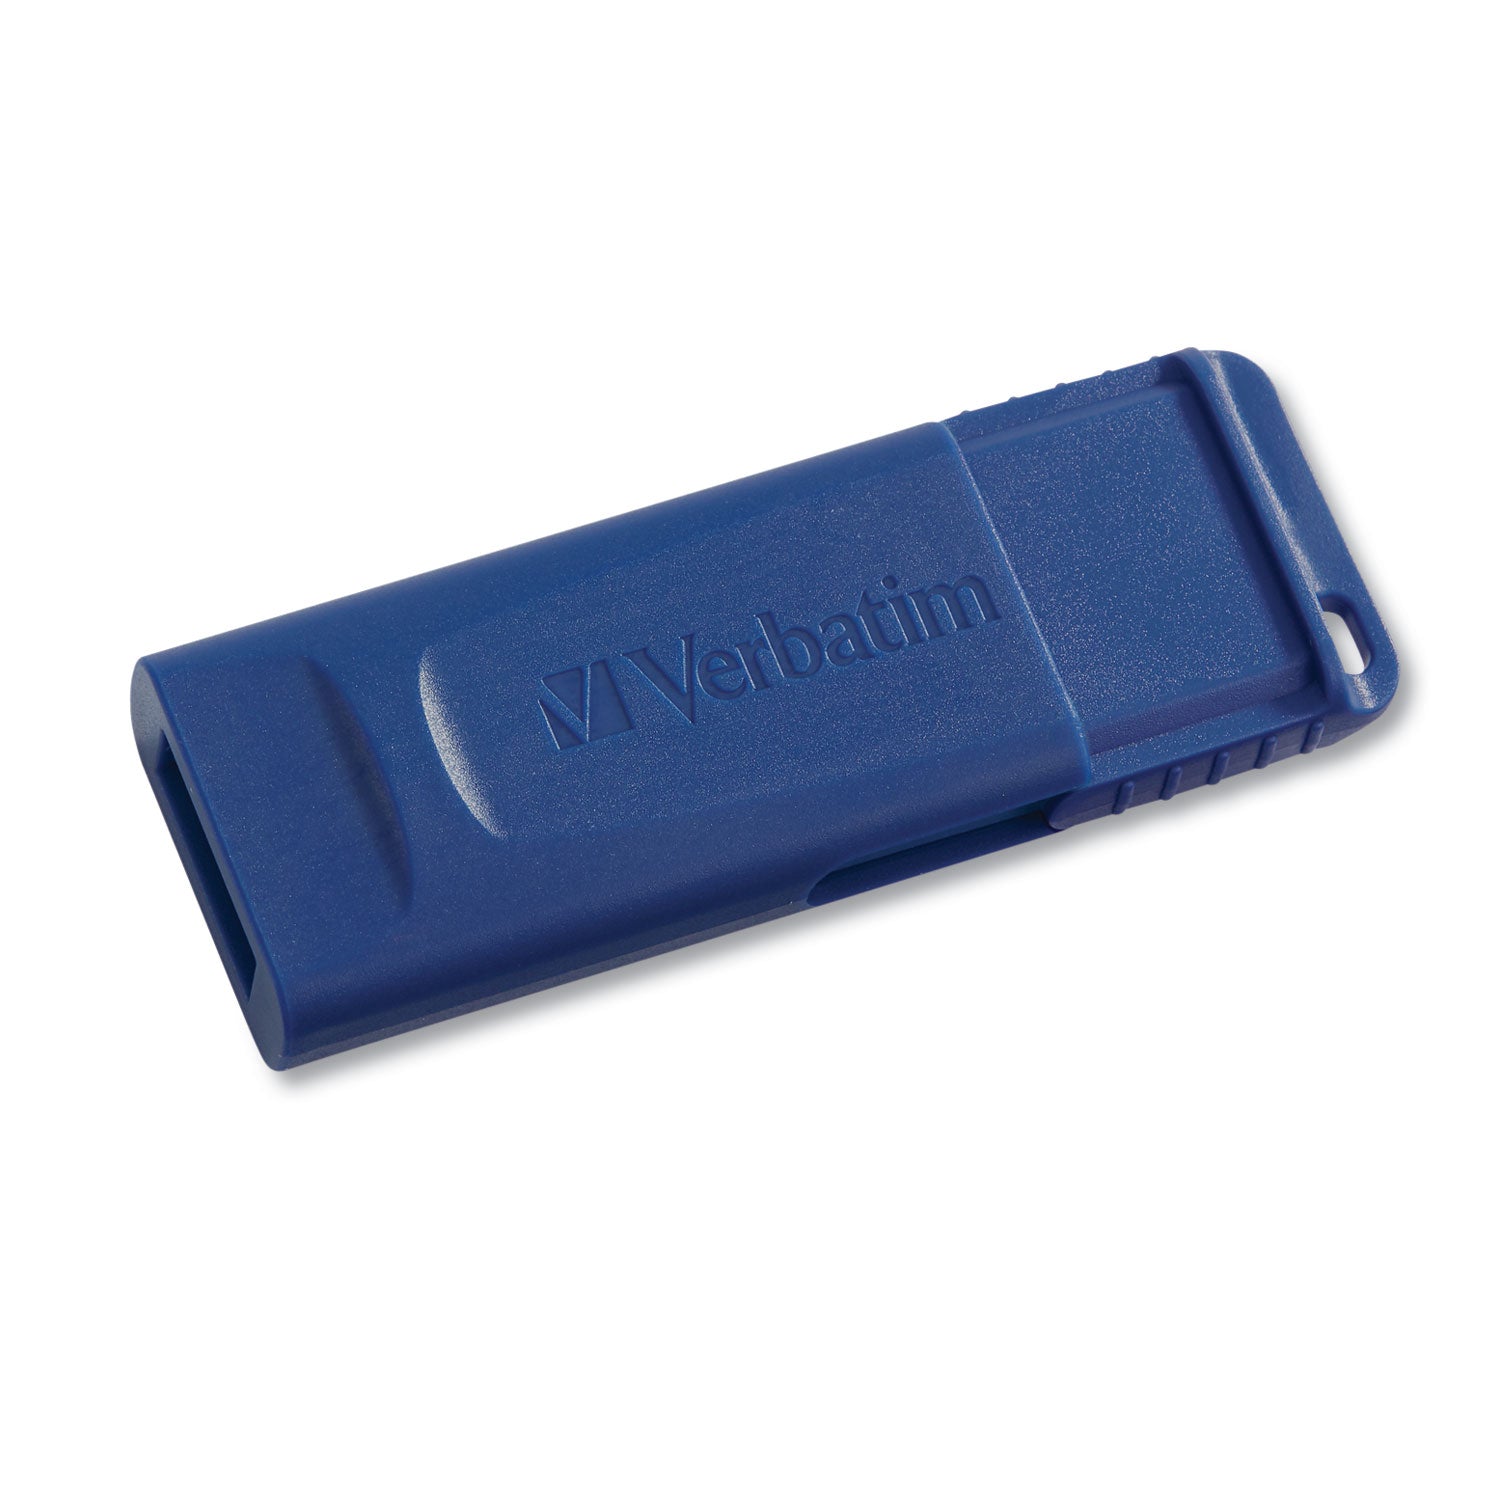 Classic USB 2.0 Flash Drive, 64 GB, Blue - 